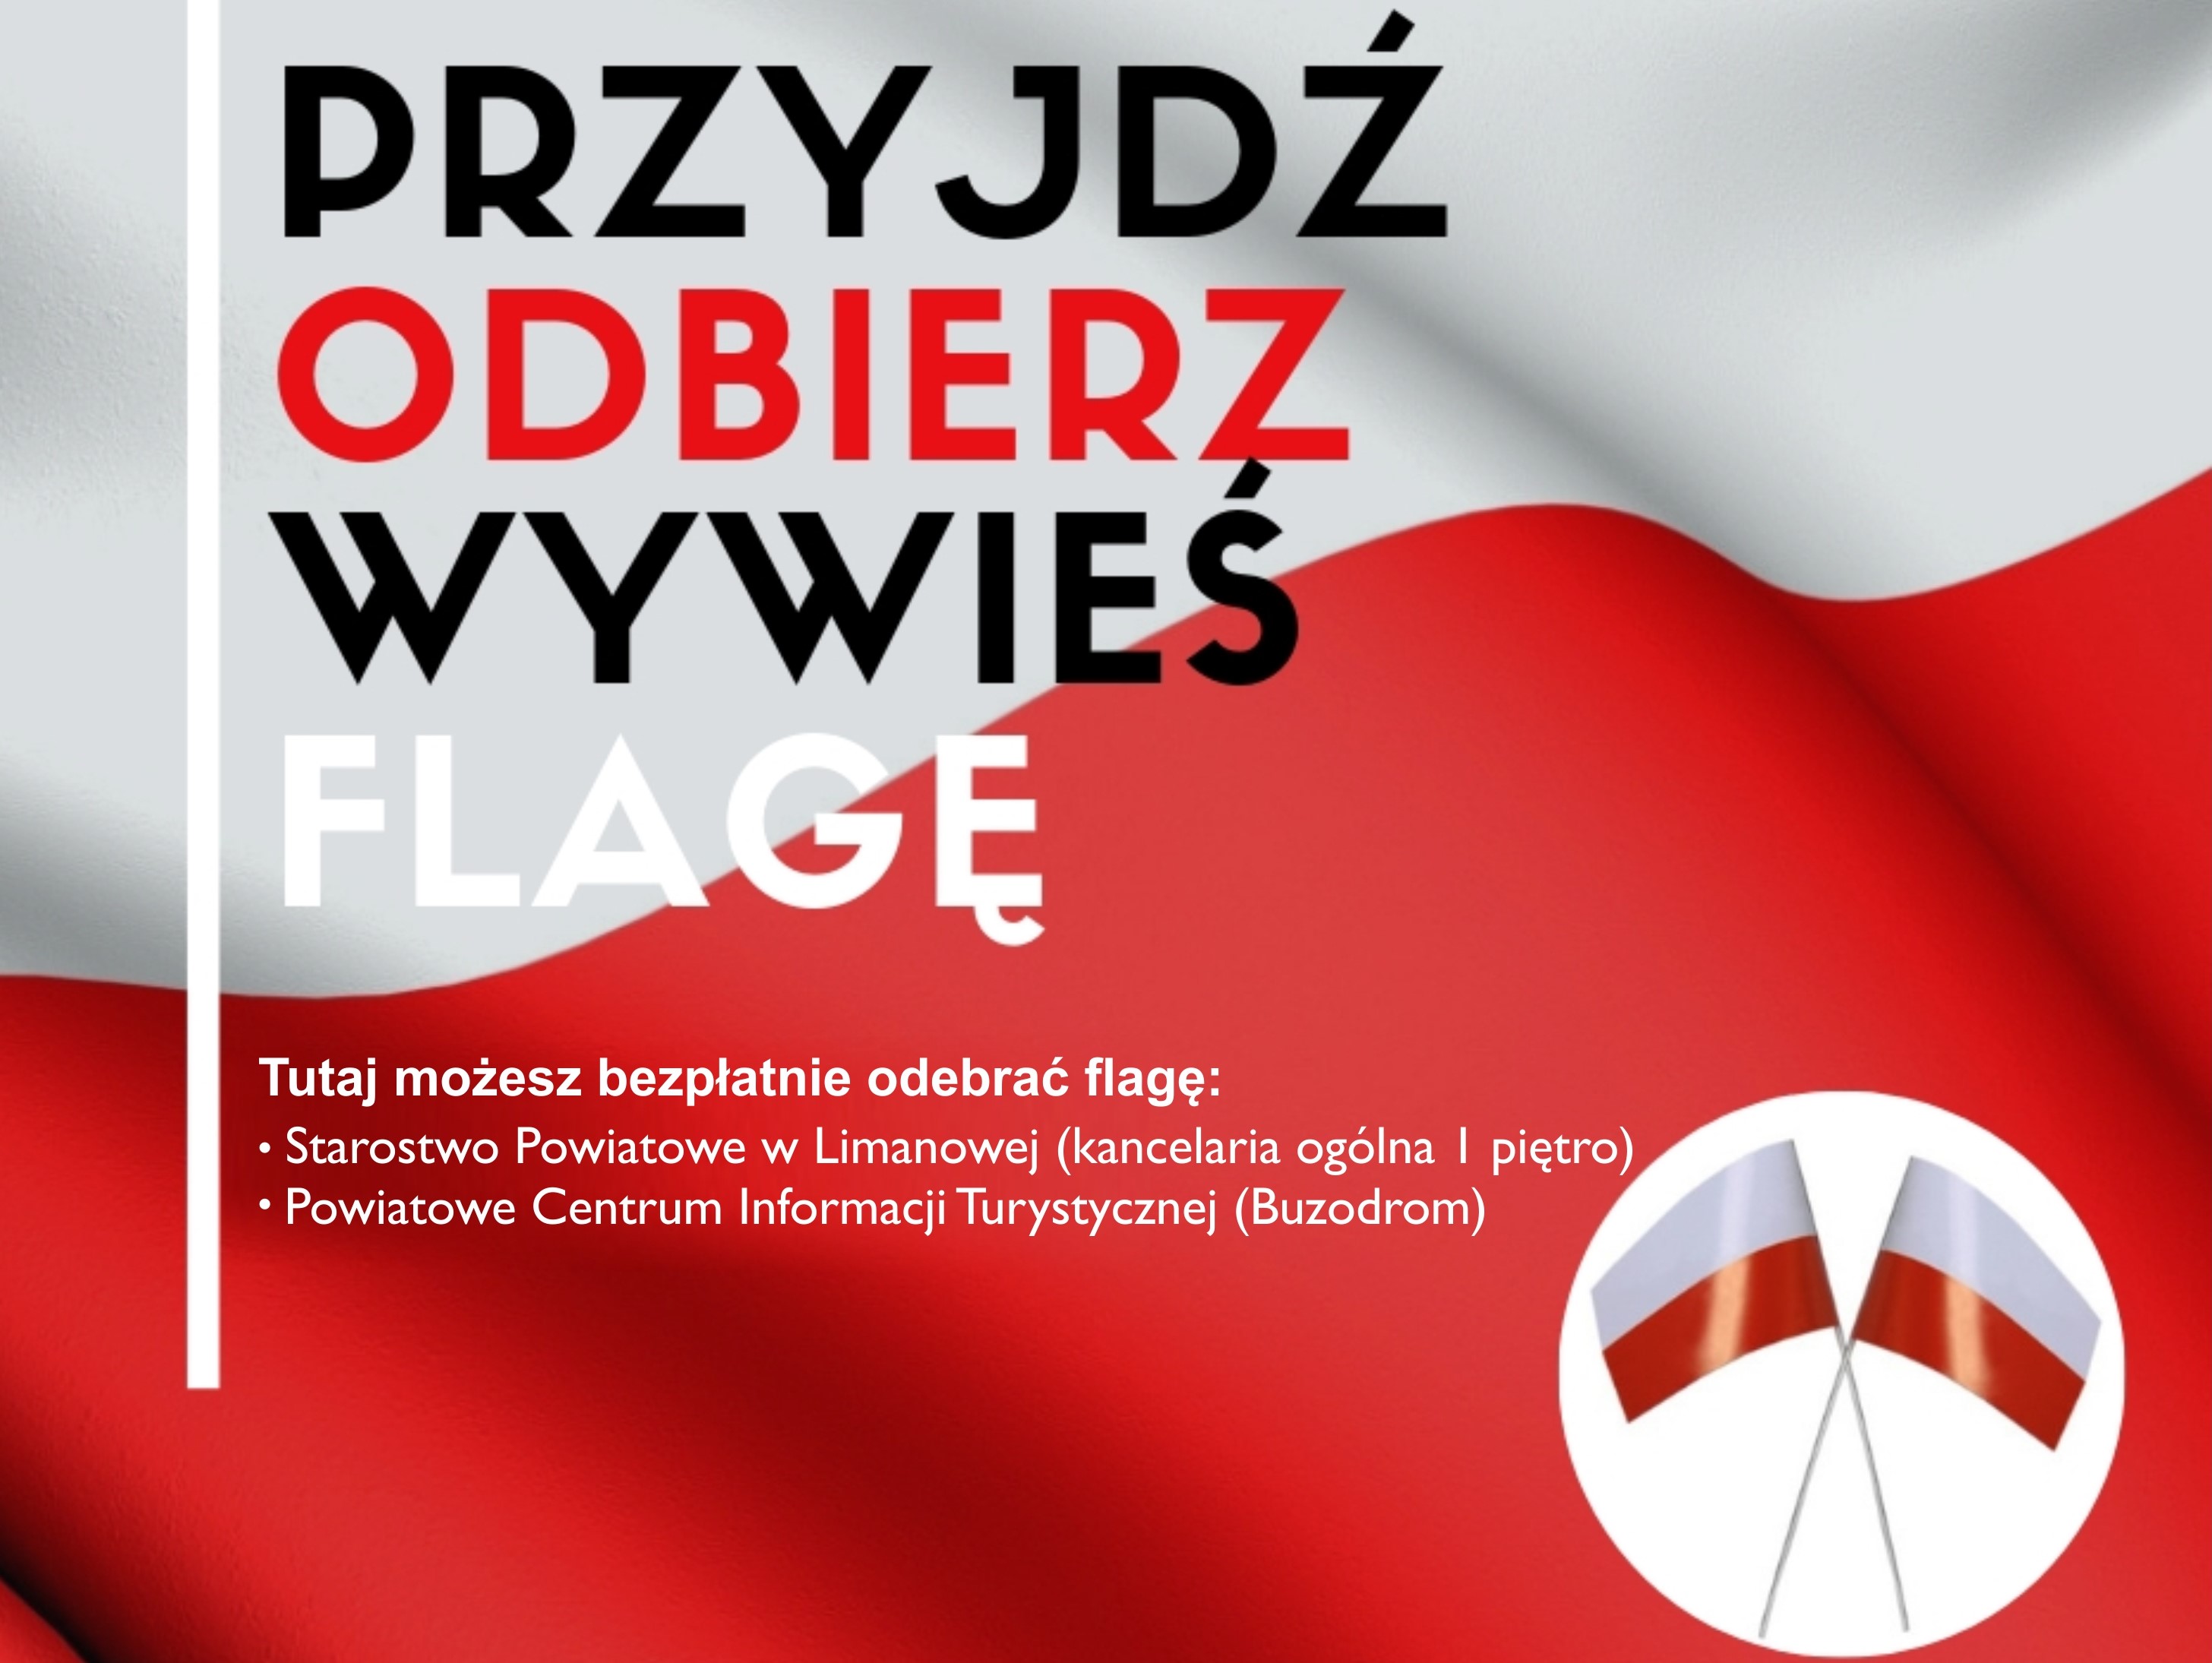 Flaga Polski z napisem : przyjdż, odbierz, wywieś flagę. Tutaj możesz bezłatnie oderać flagę: Starostwo Powiatowe kancelaria ogólna, Powiatowe centrum informacji - buzodrom.